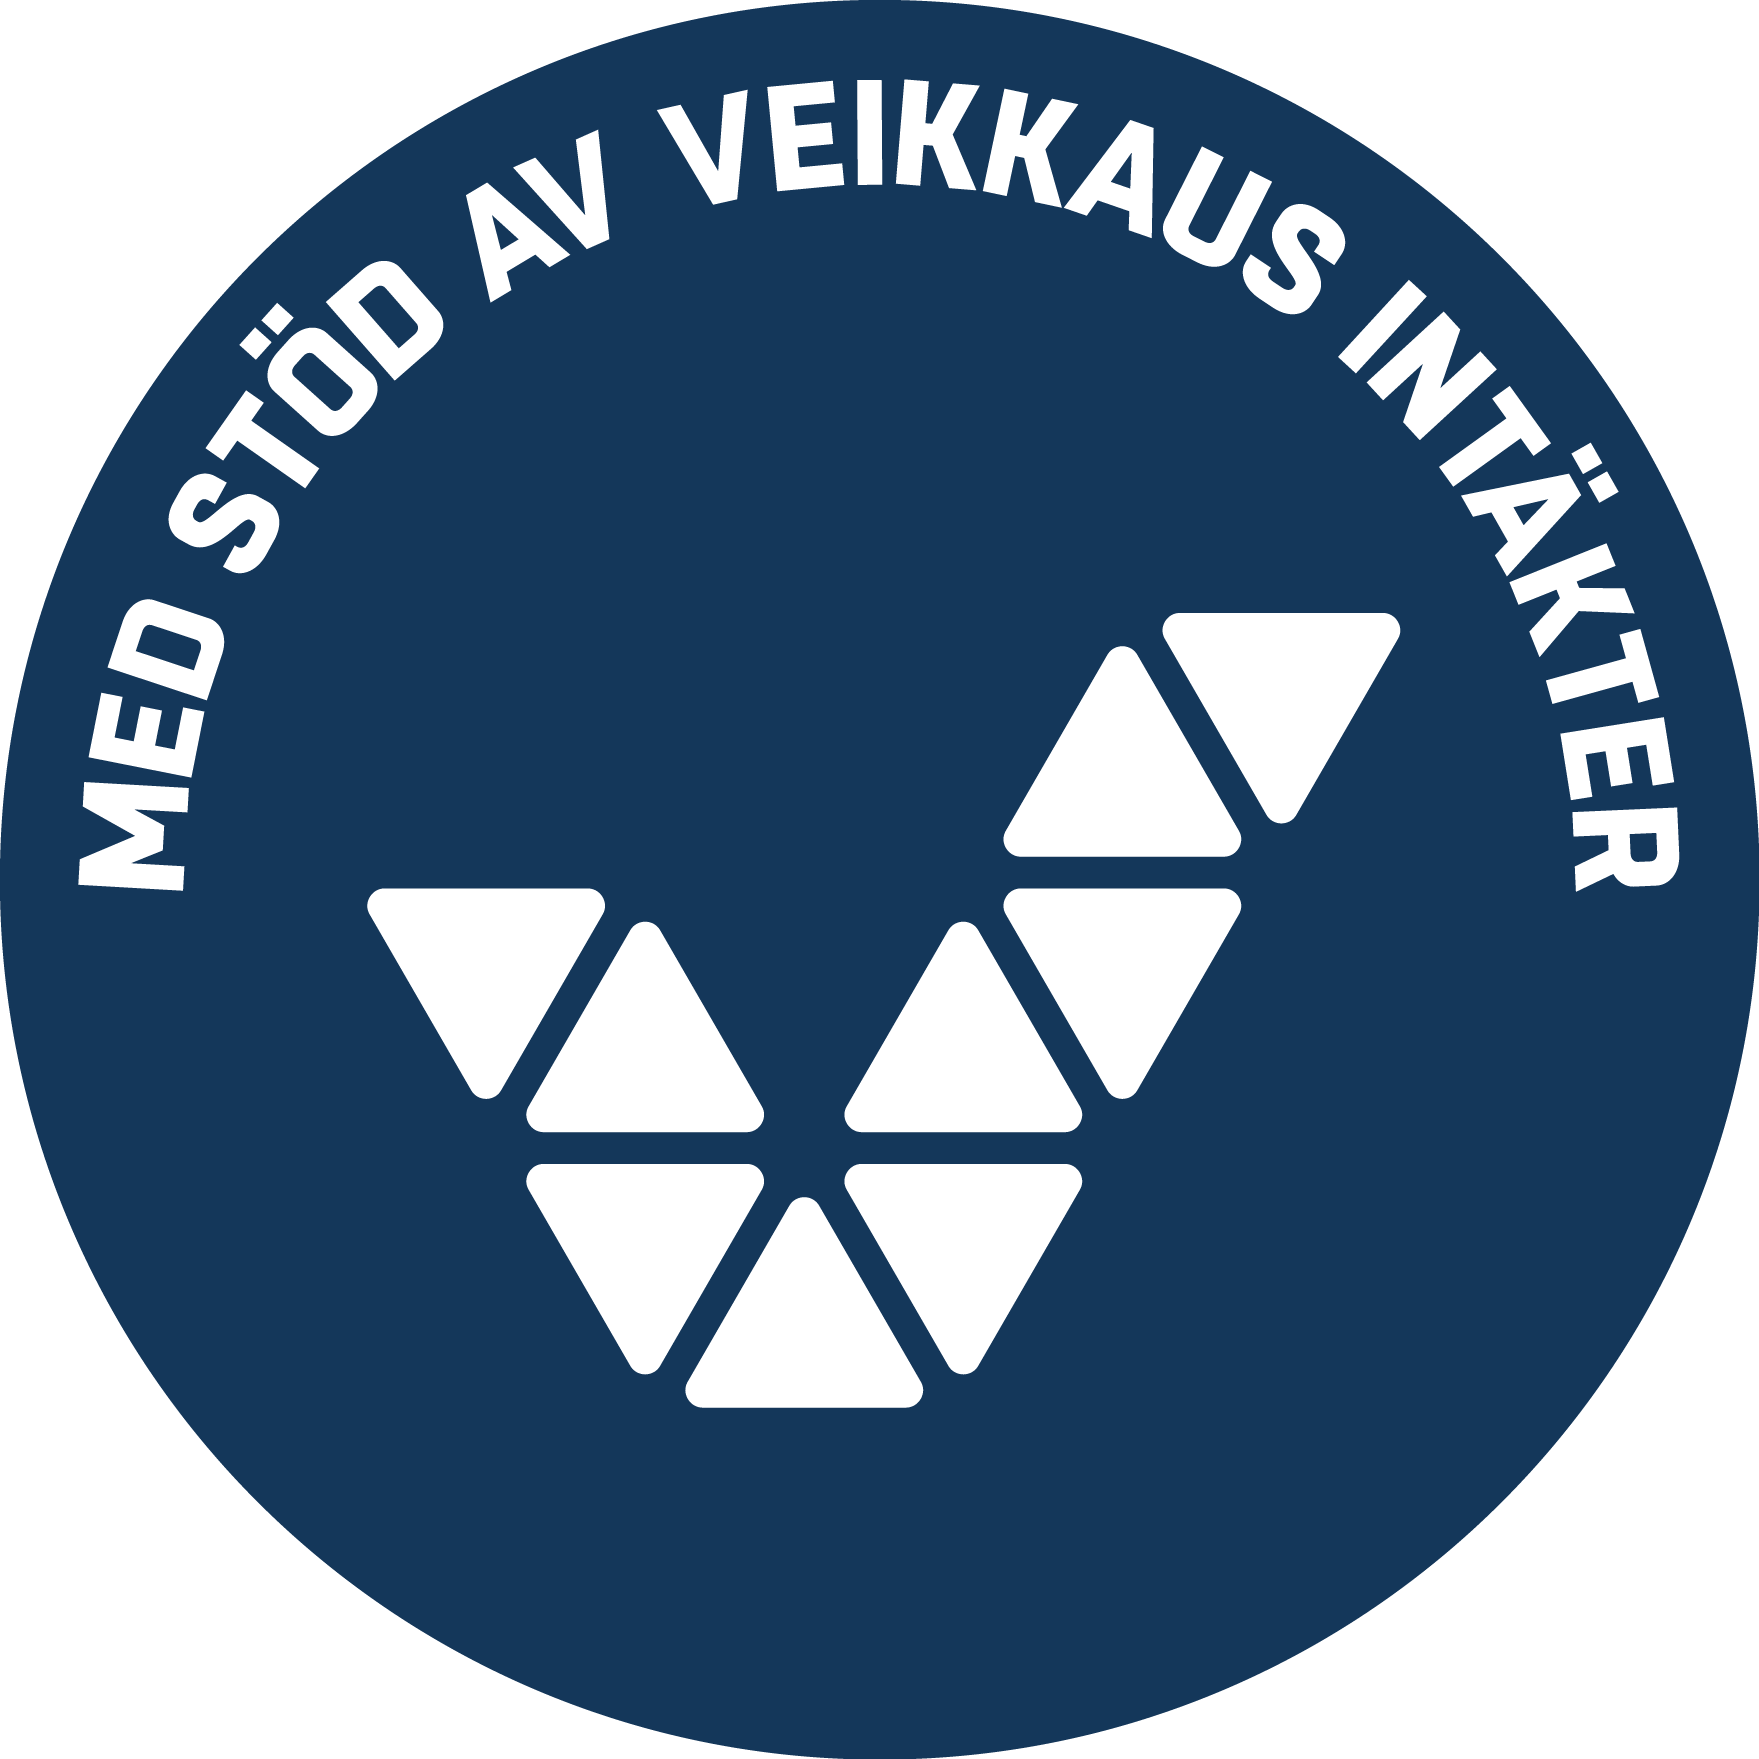 Steas logotyp med texten Med stöd av Veikkaus intäkter.